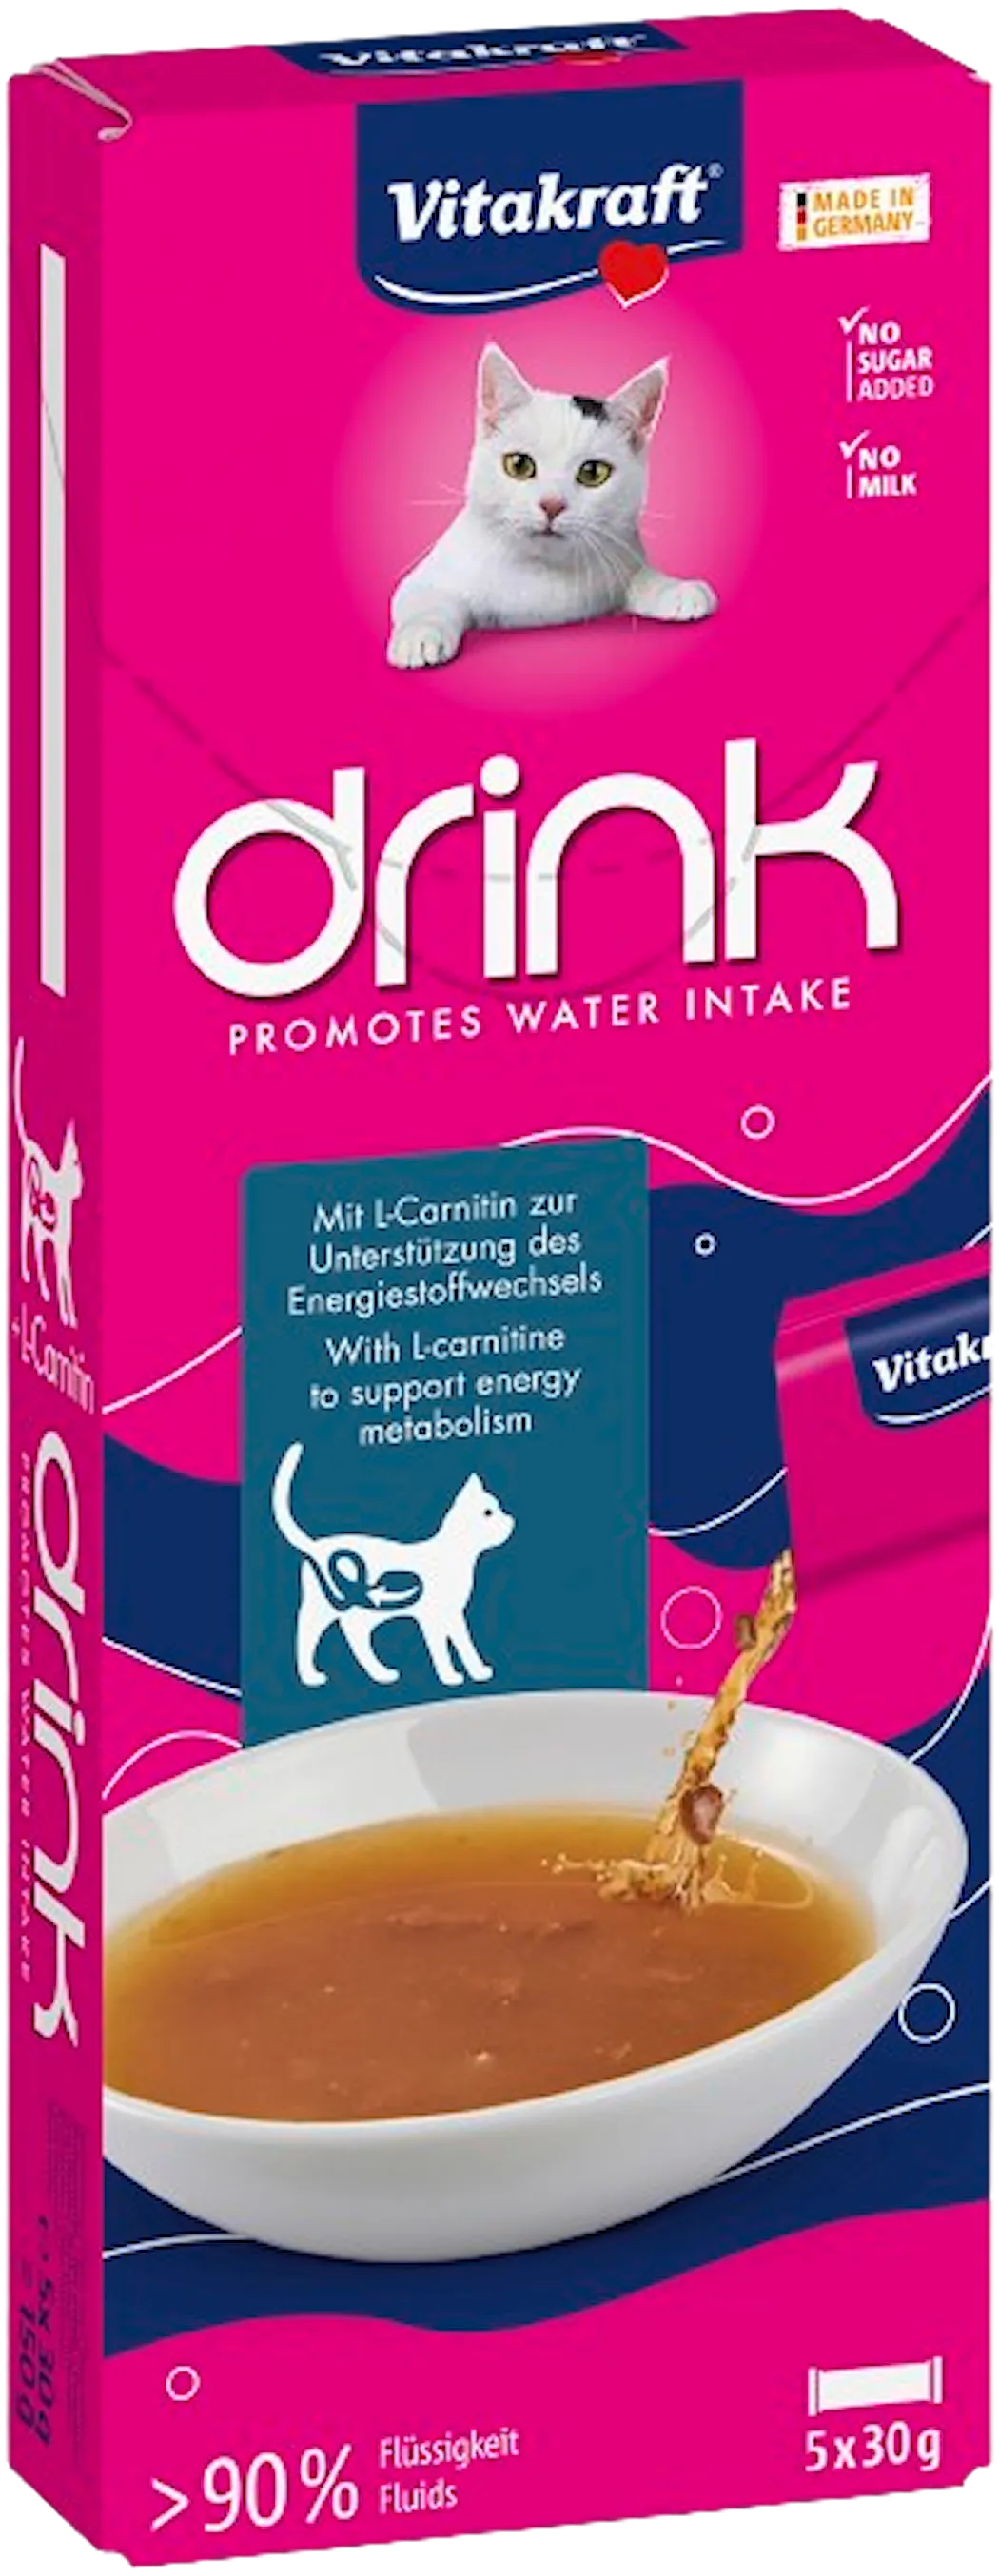 Vitakraft Dryck Lax smak + L-Carnitine 5x30g